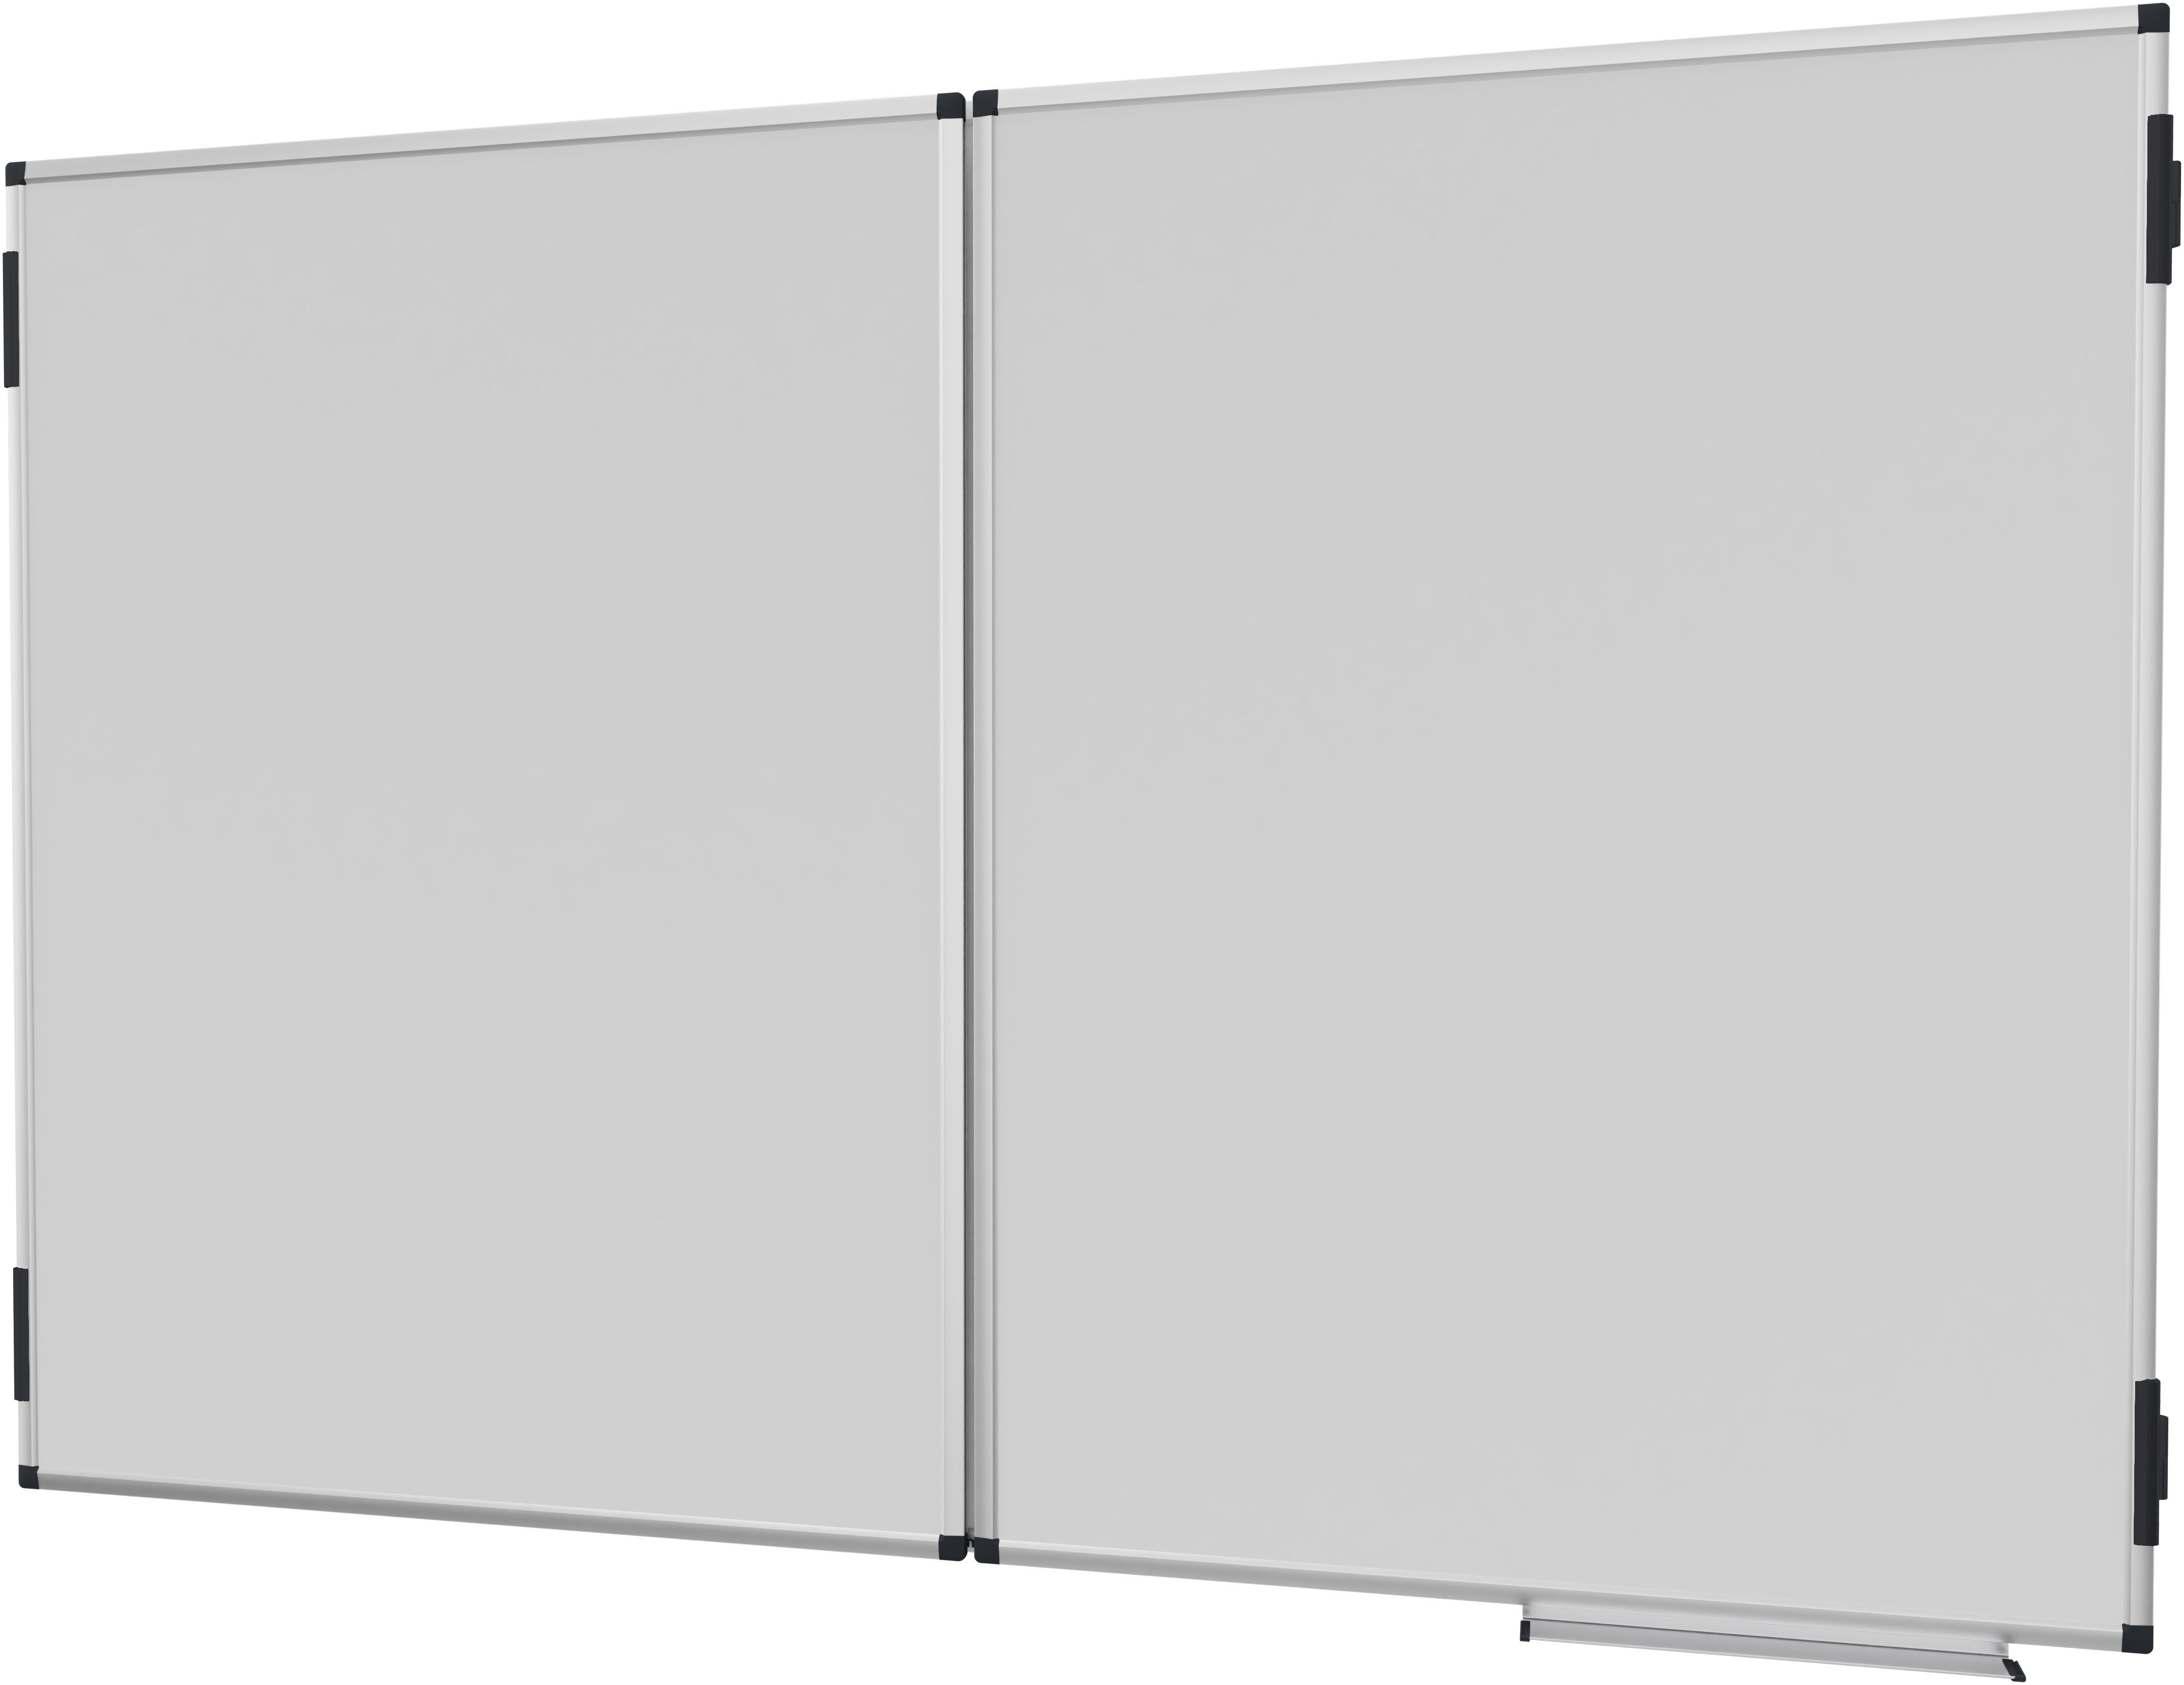 Unite Plus Conference Whiteboard 90 x 120 cm